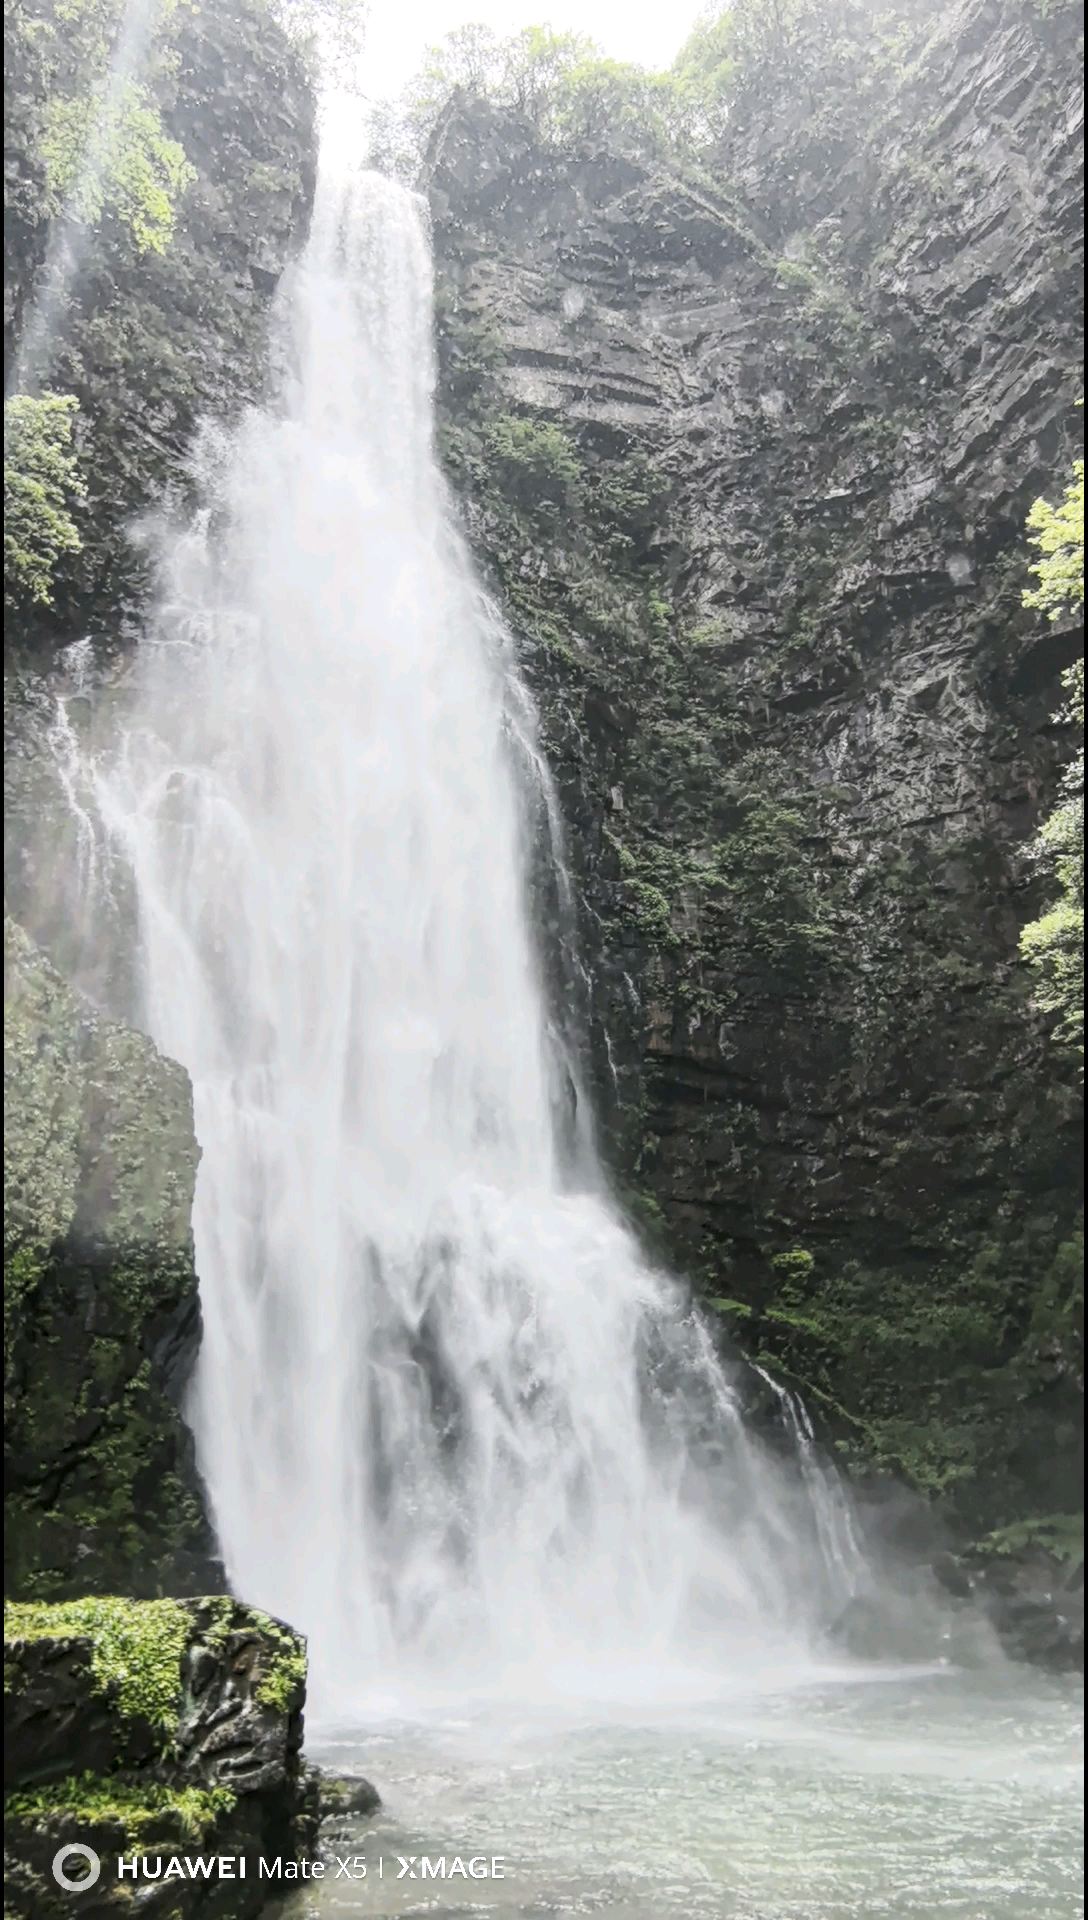 碧玉潭是龙潭瀑布群中的的第一瀑，坐落在峡谷的始端，瀑布落差达67米，水声震耳，水雾如烟，巨大的水雾从